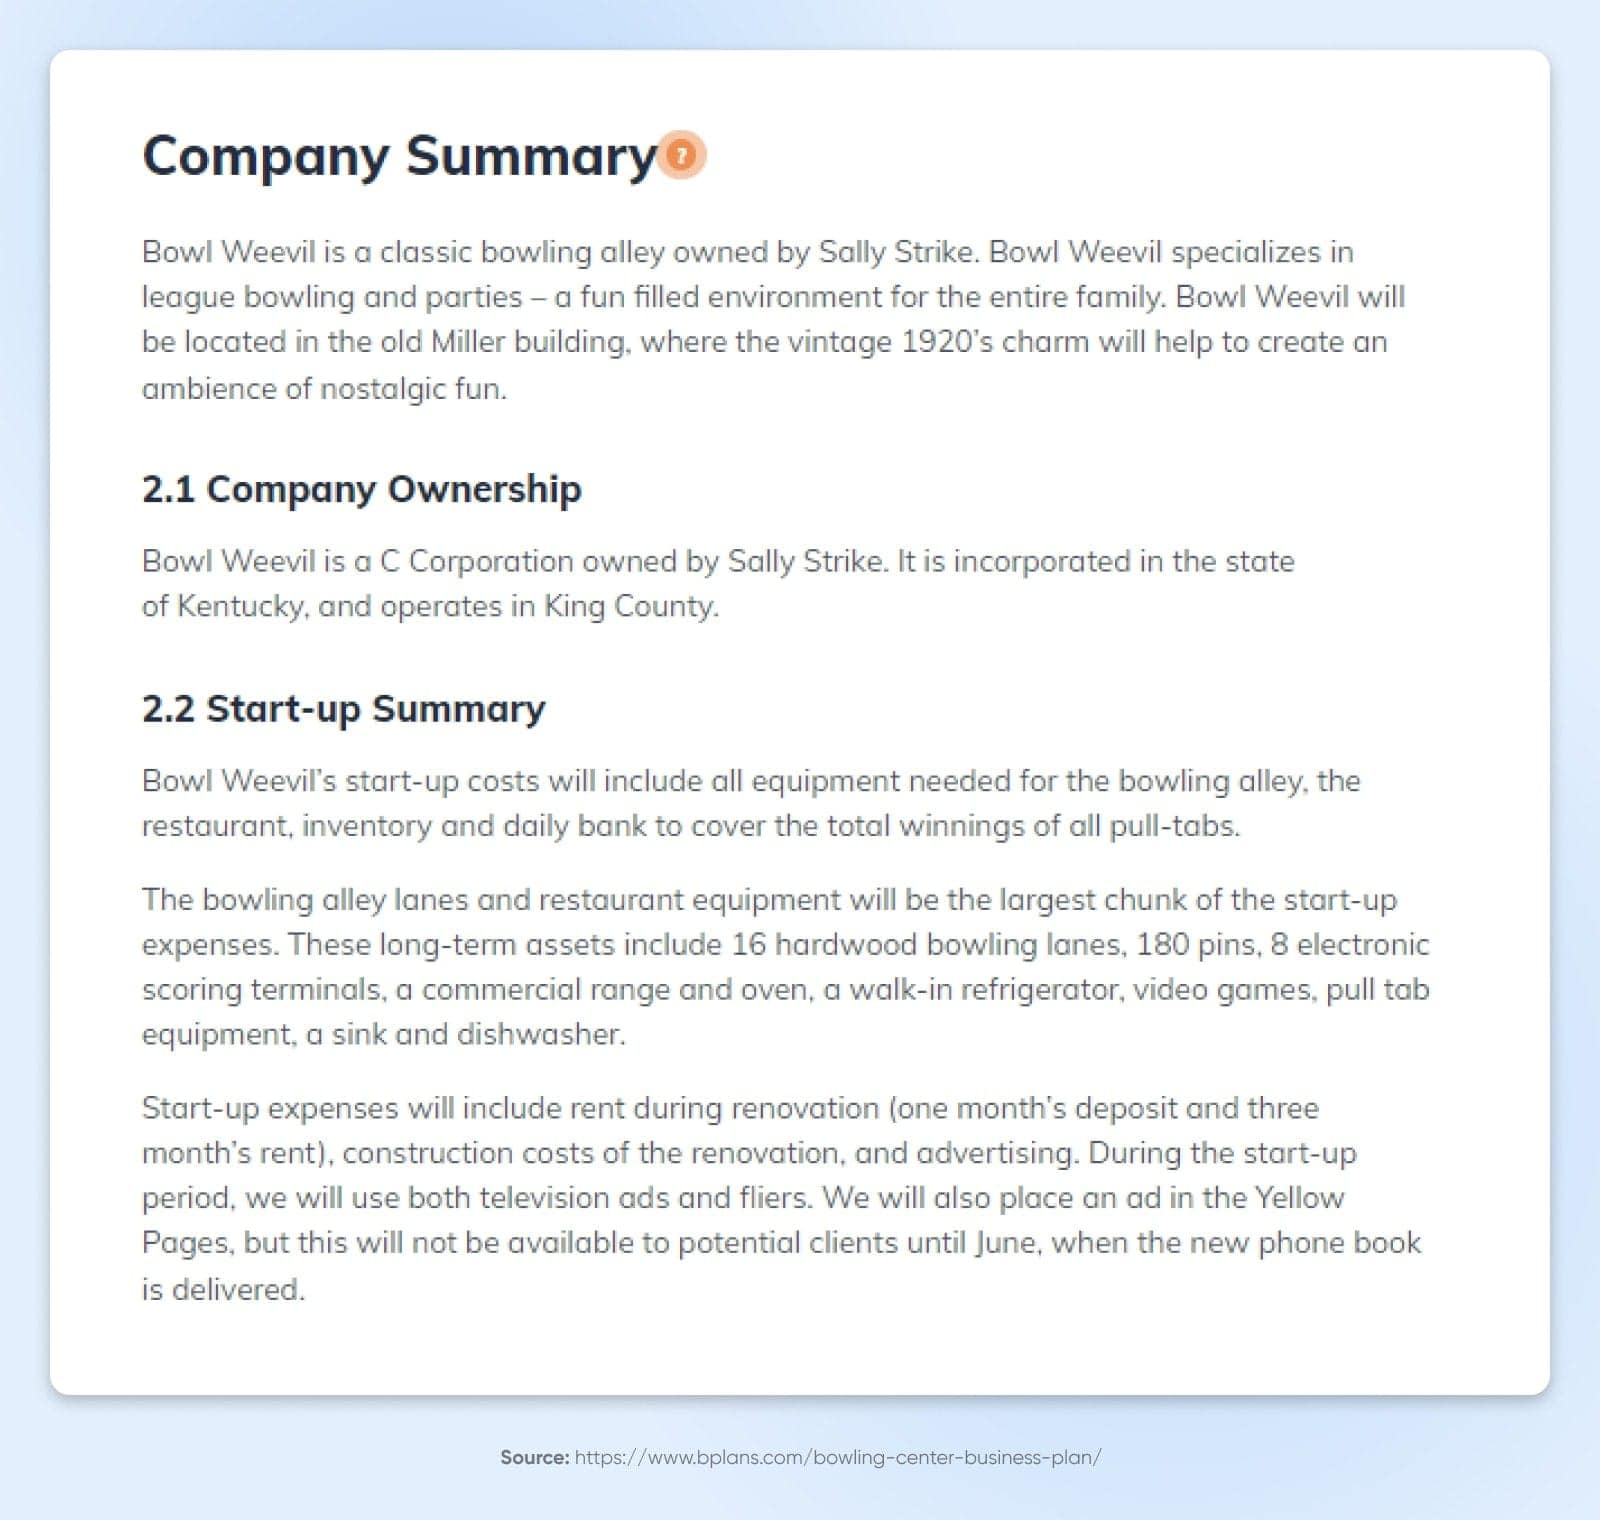 Eine weiße Seite mit der Unternehmenszusammenfassung mit Abschnitten zu Unternehmenseigentum und Start-up-Zusammenfassung.